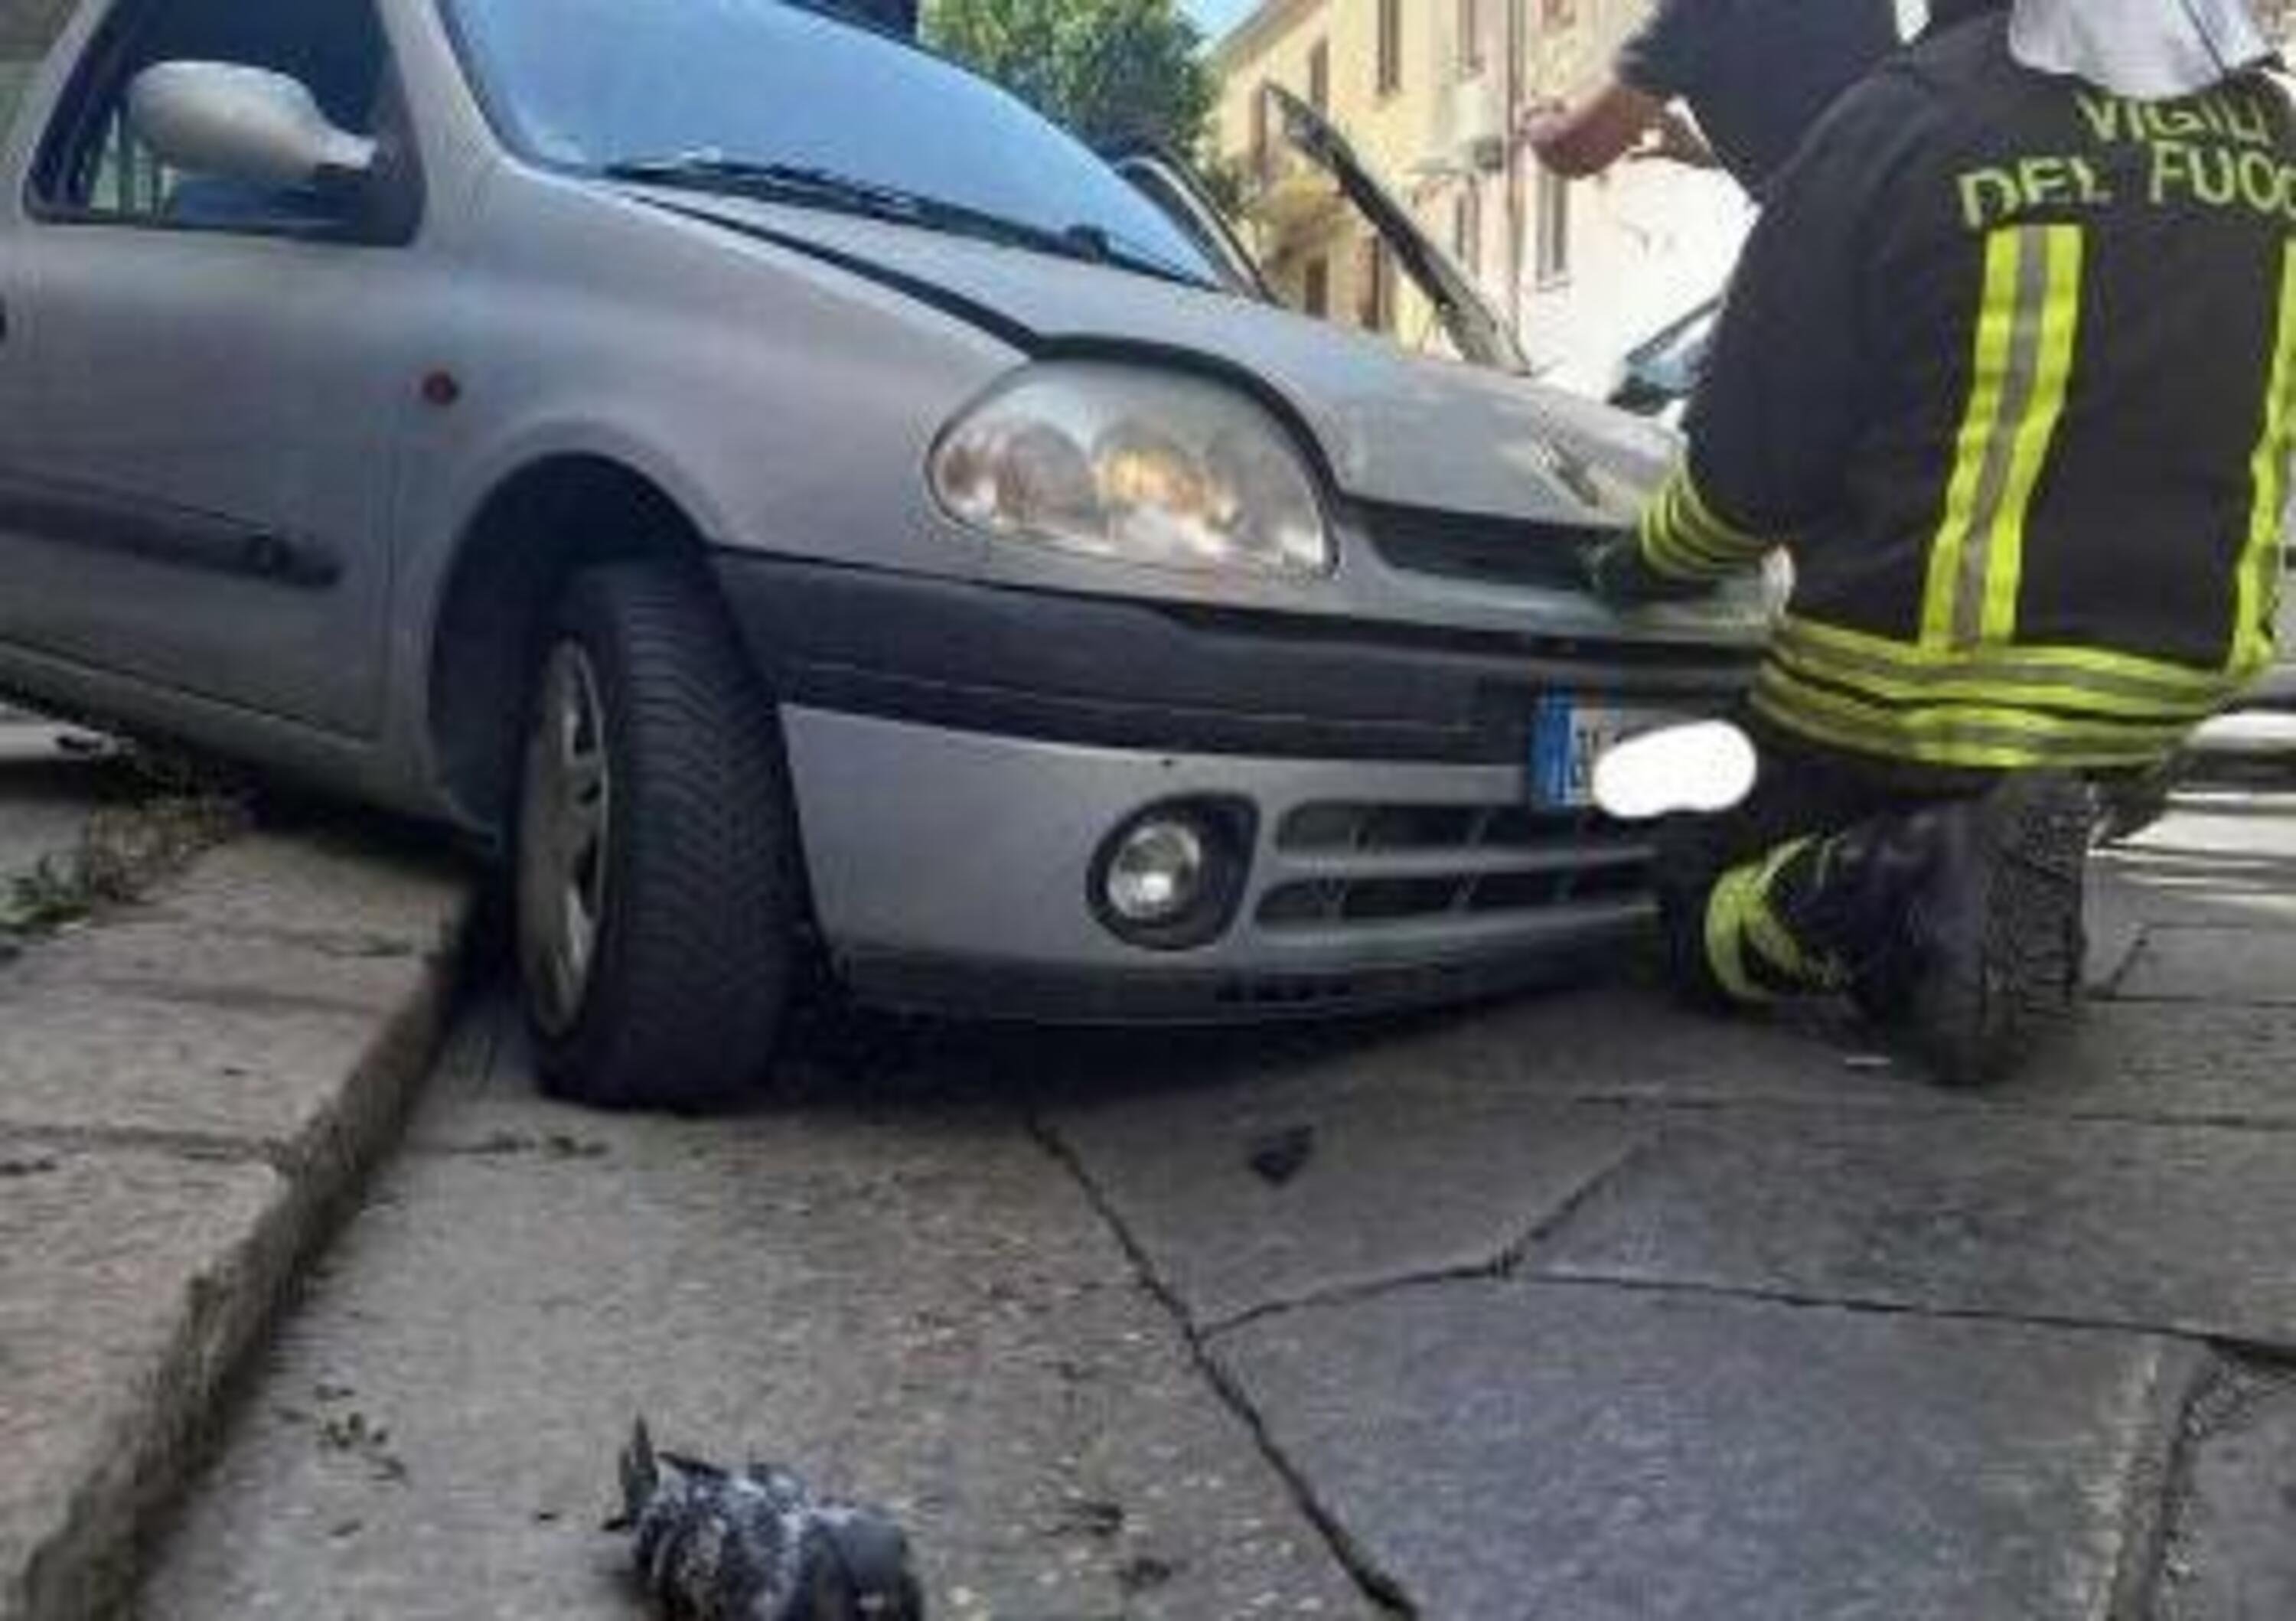 Frontale a Sassari: tutta colpa di un piccione piombato in auto dal finestrino